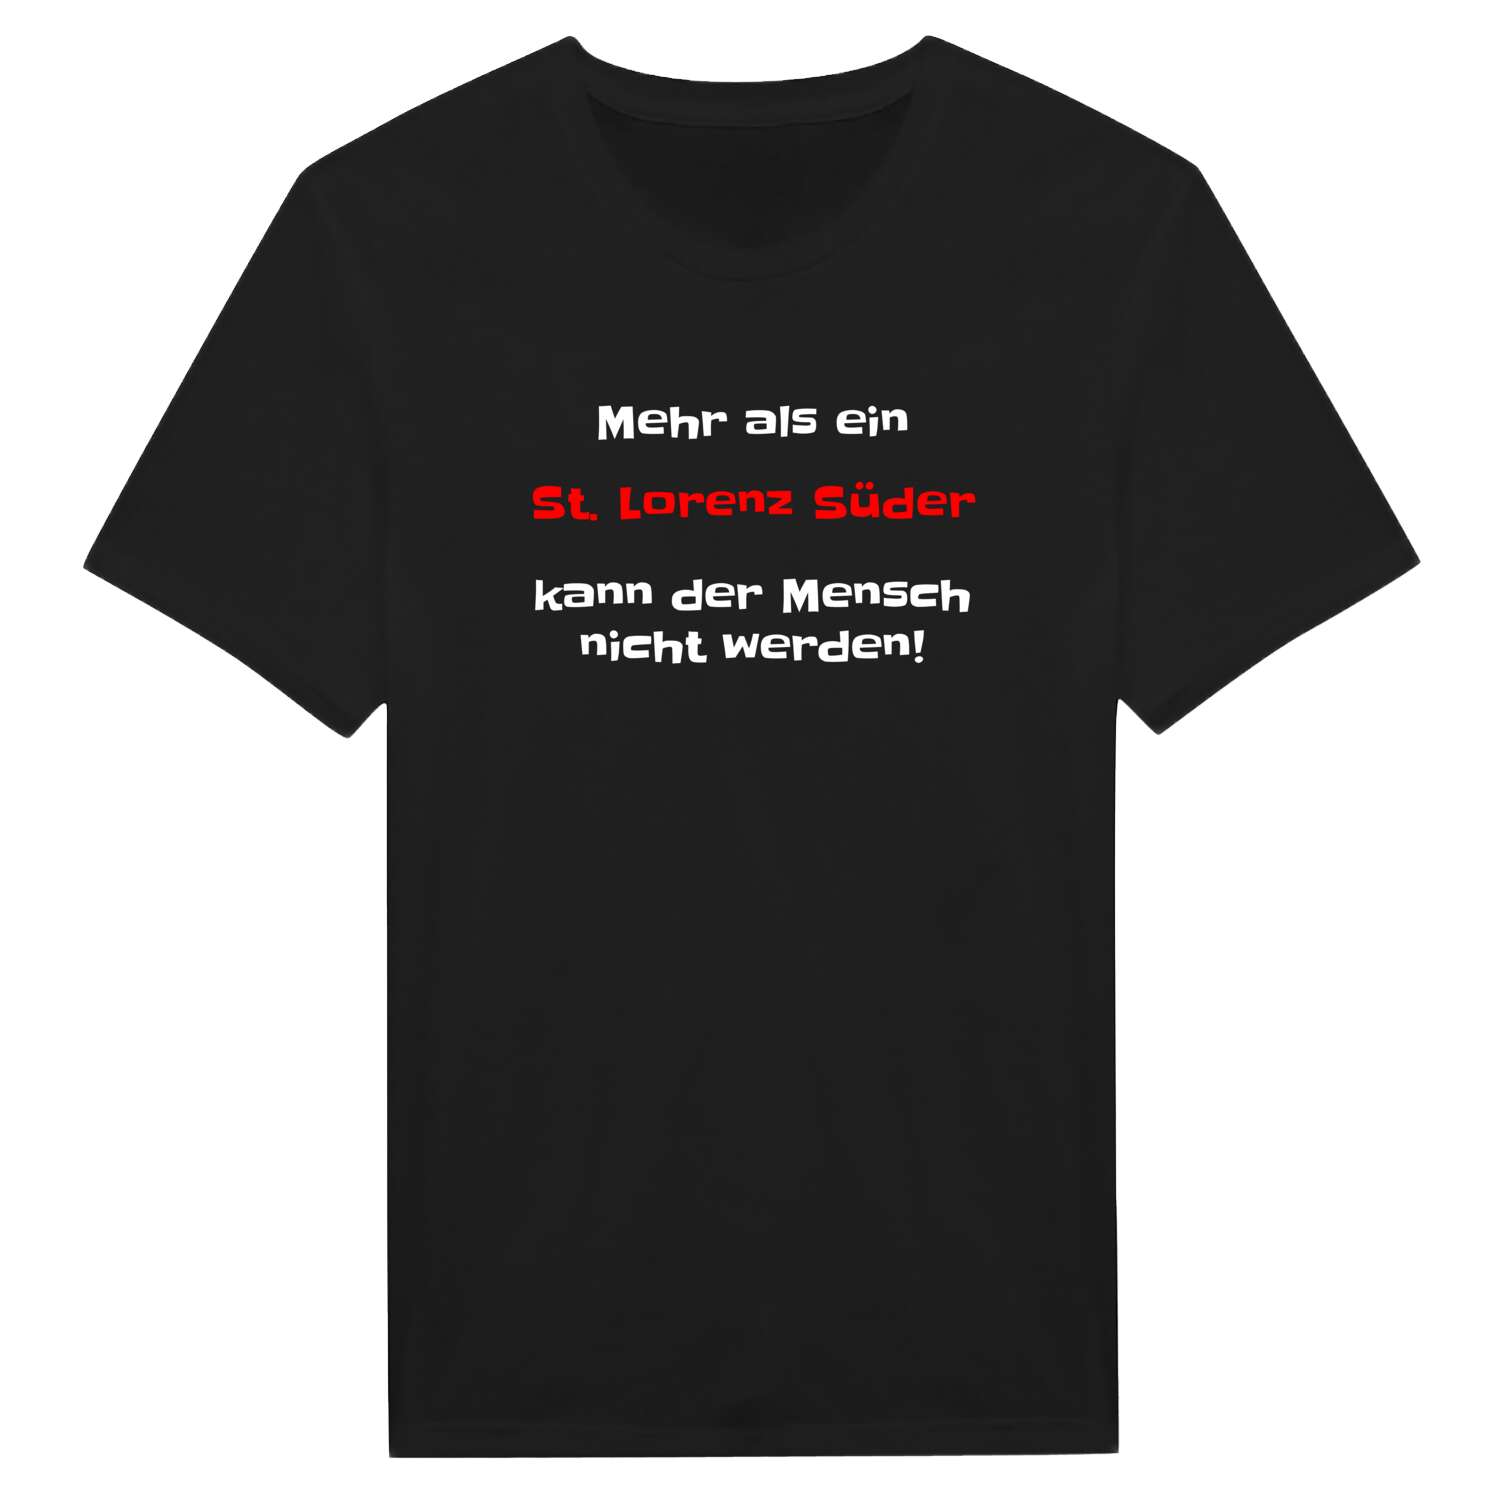 St. Lorenz Süd T-Shirt »Mehr als ein«